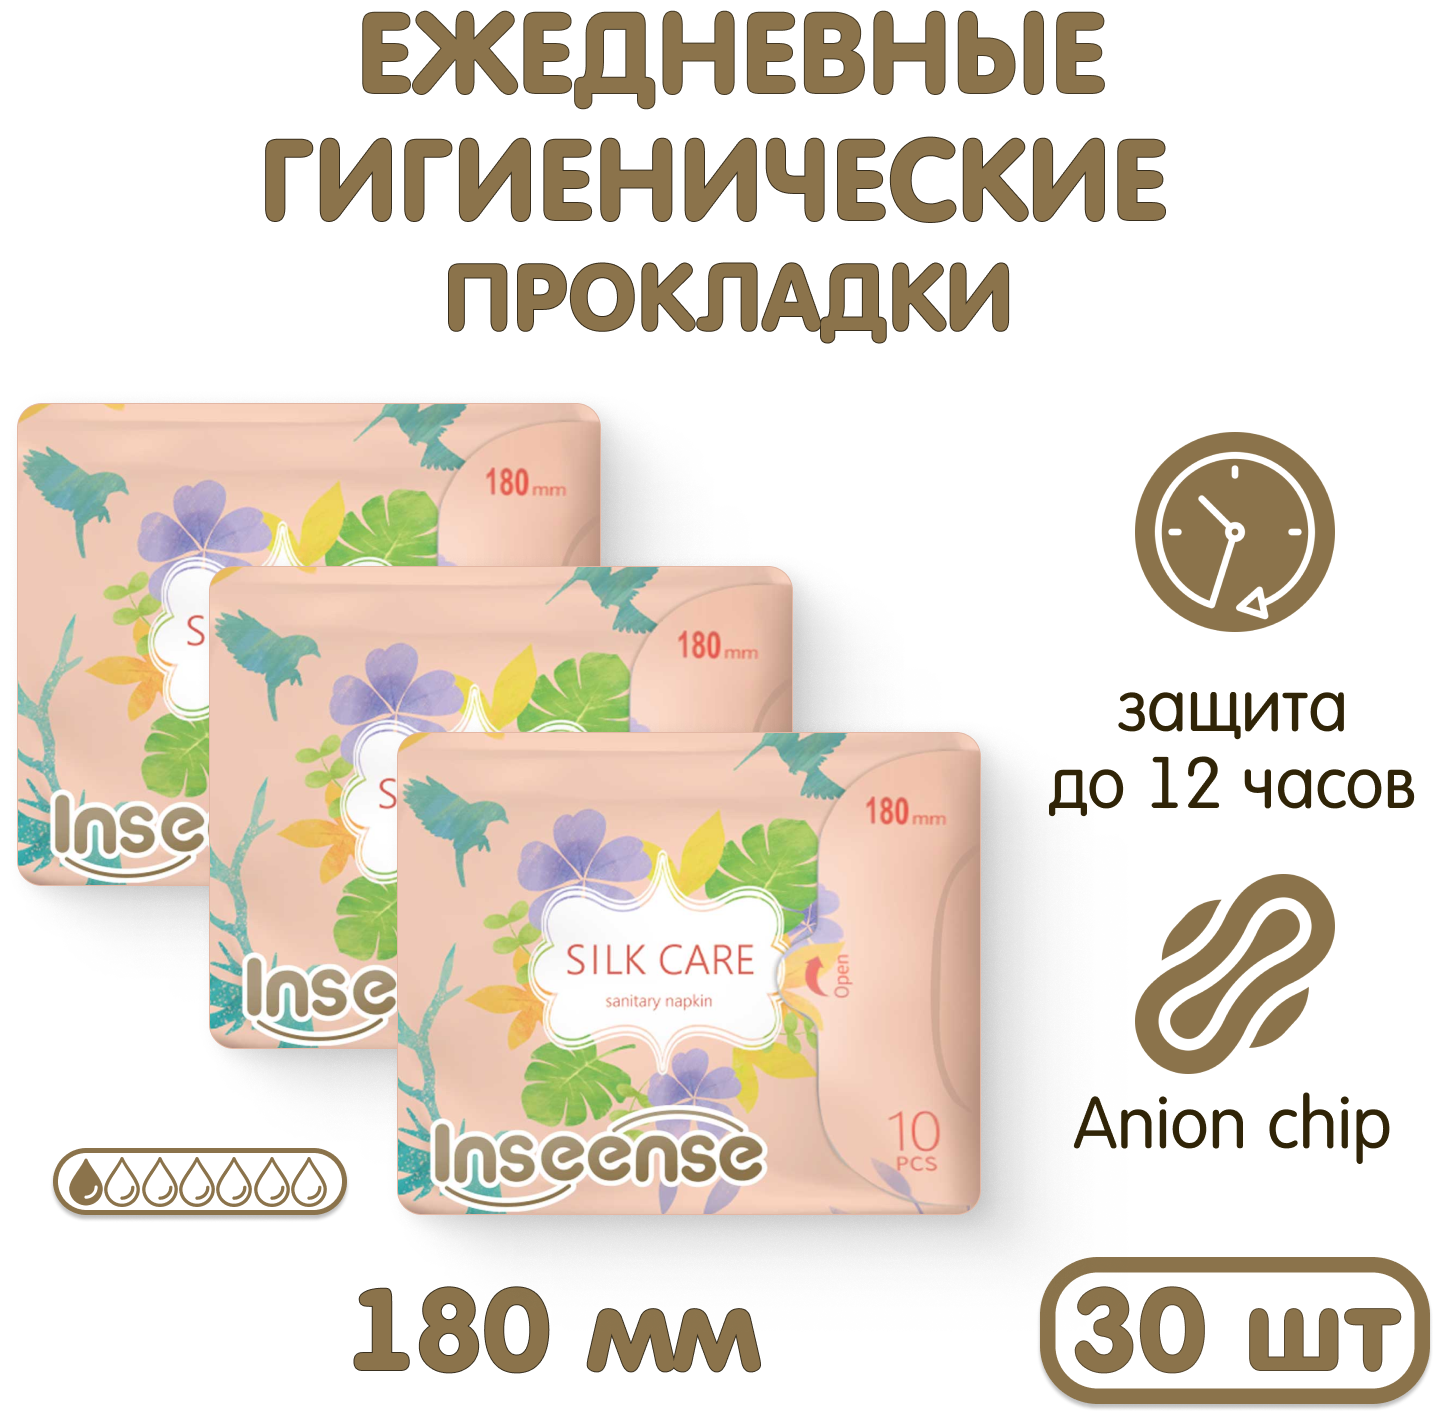 Прокладки INSEENSE Silk Care женские гиг. ежед. с крылышками,180 мм 10 шт 3 шт